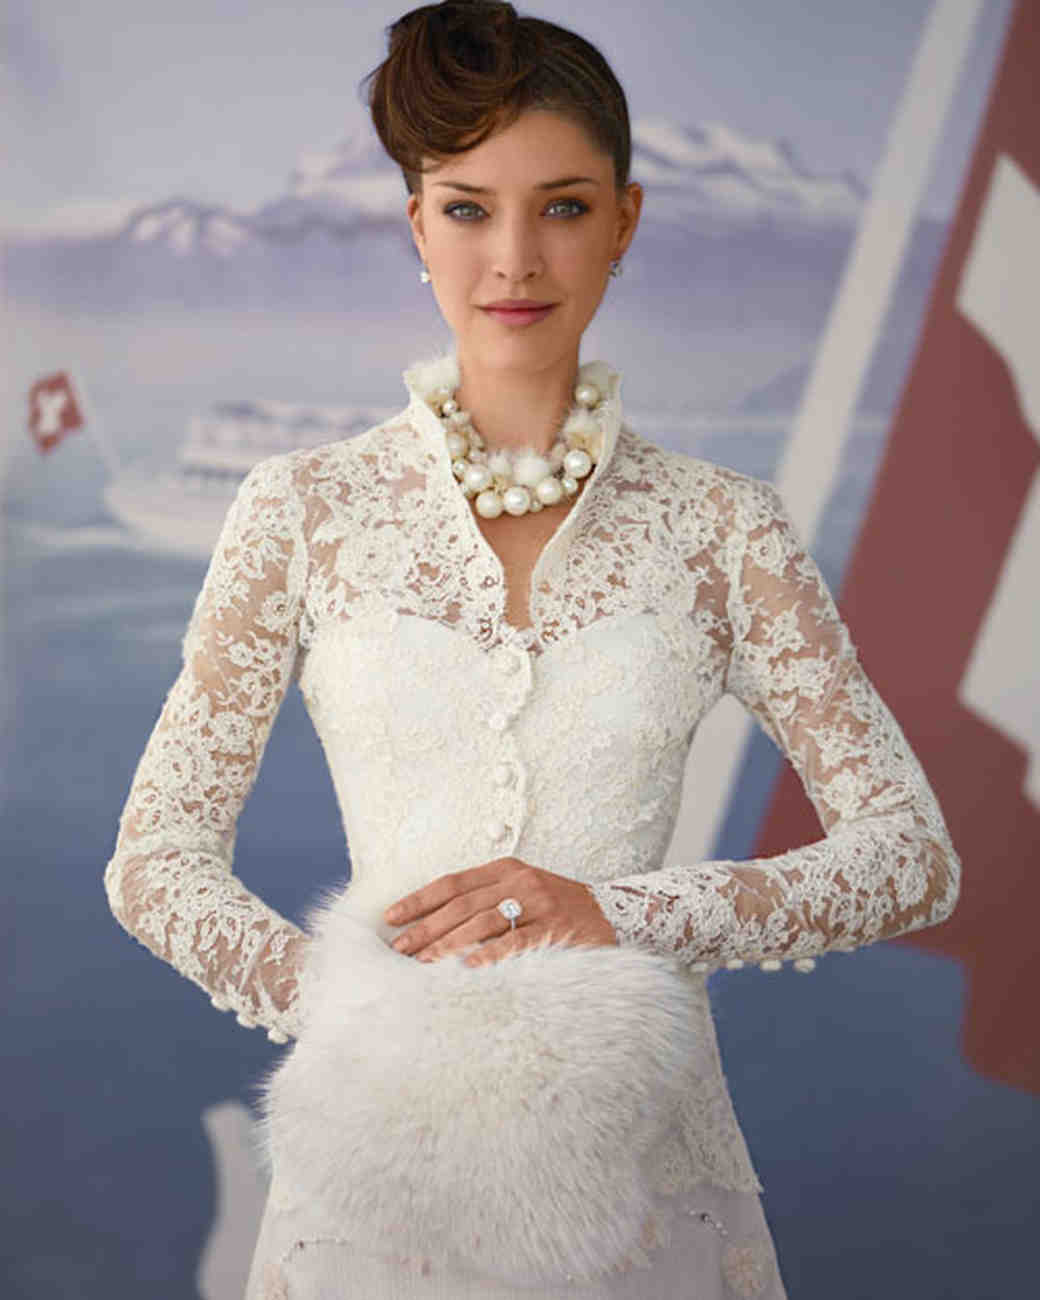 Image for wedding dress zurich